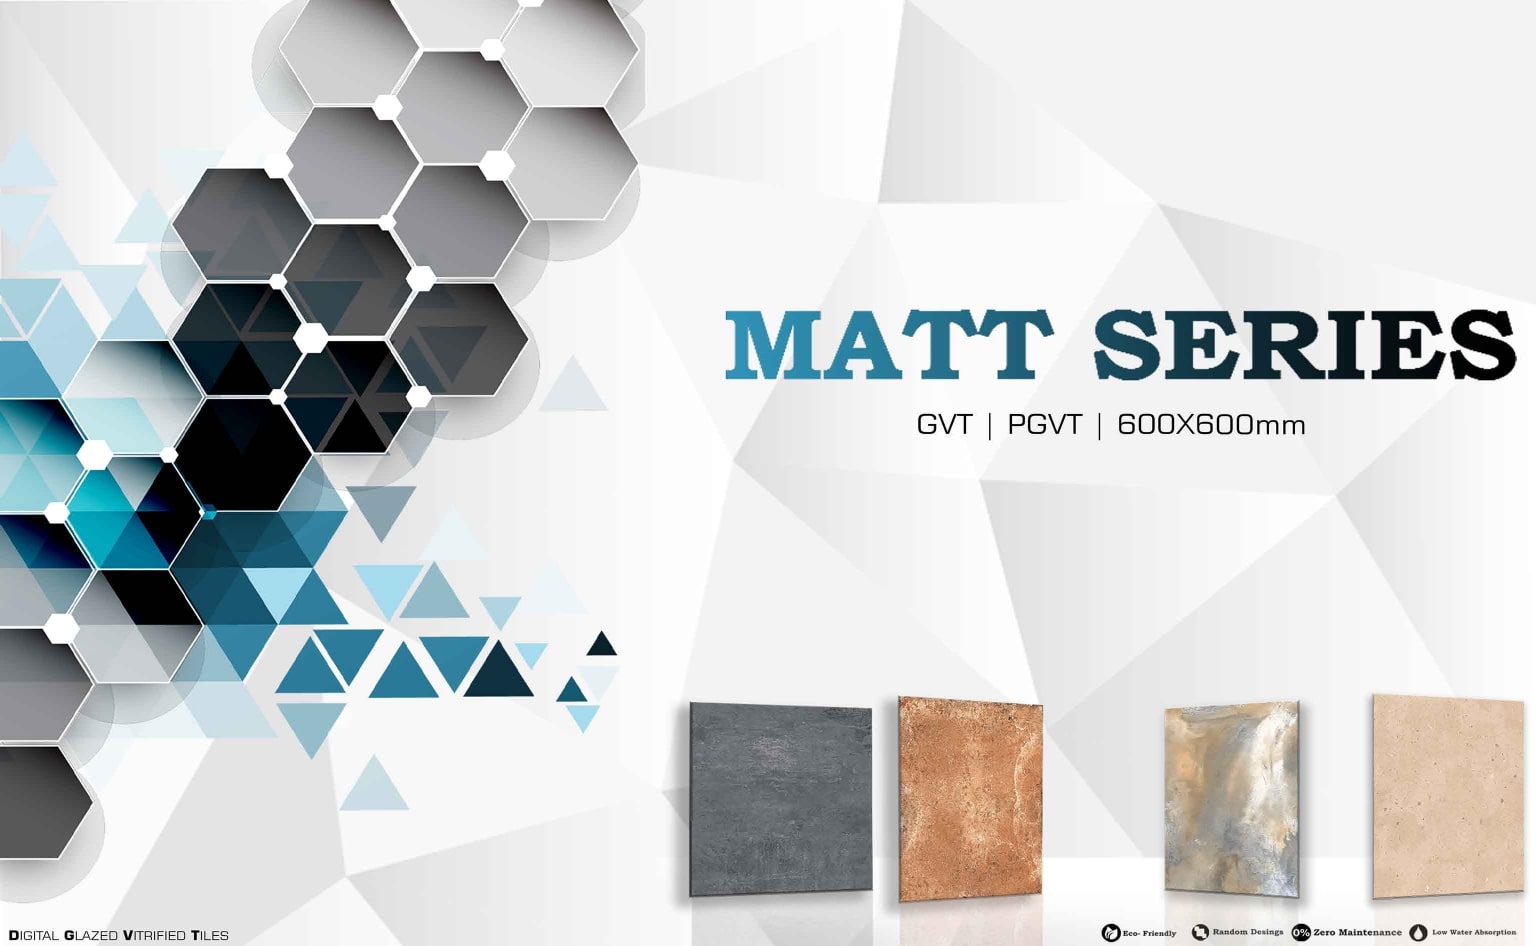 Matt Series catalogue